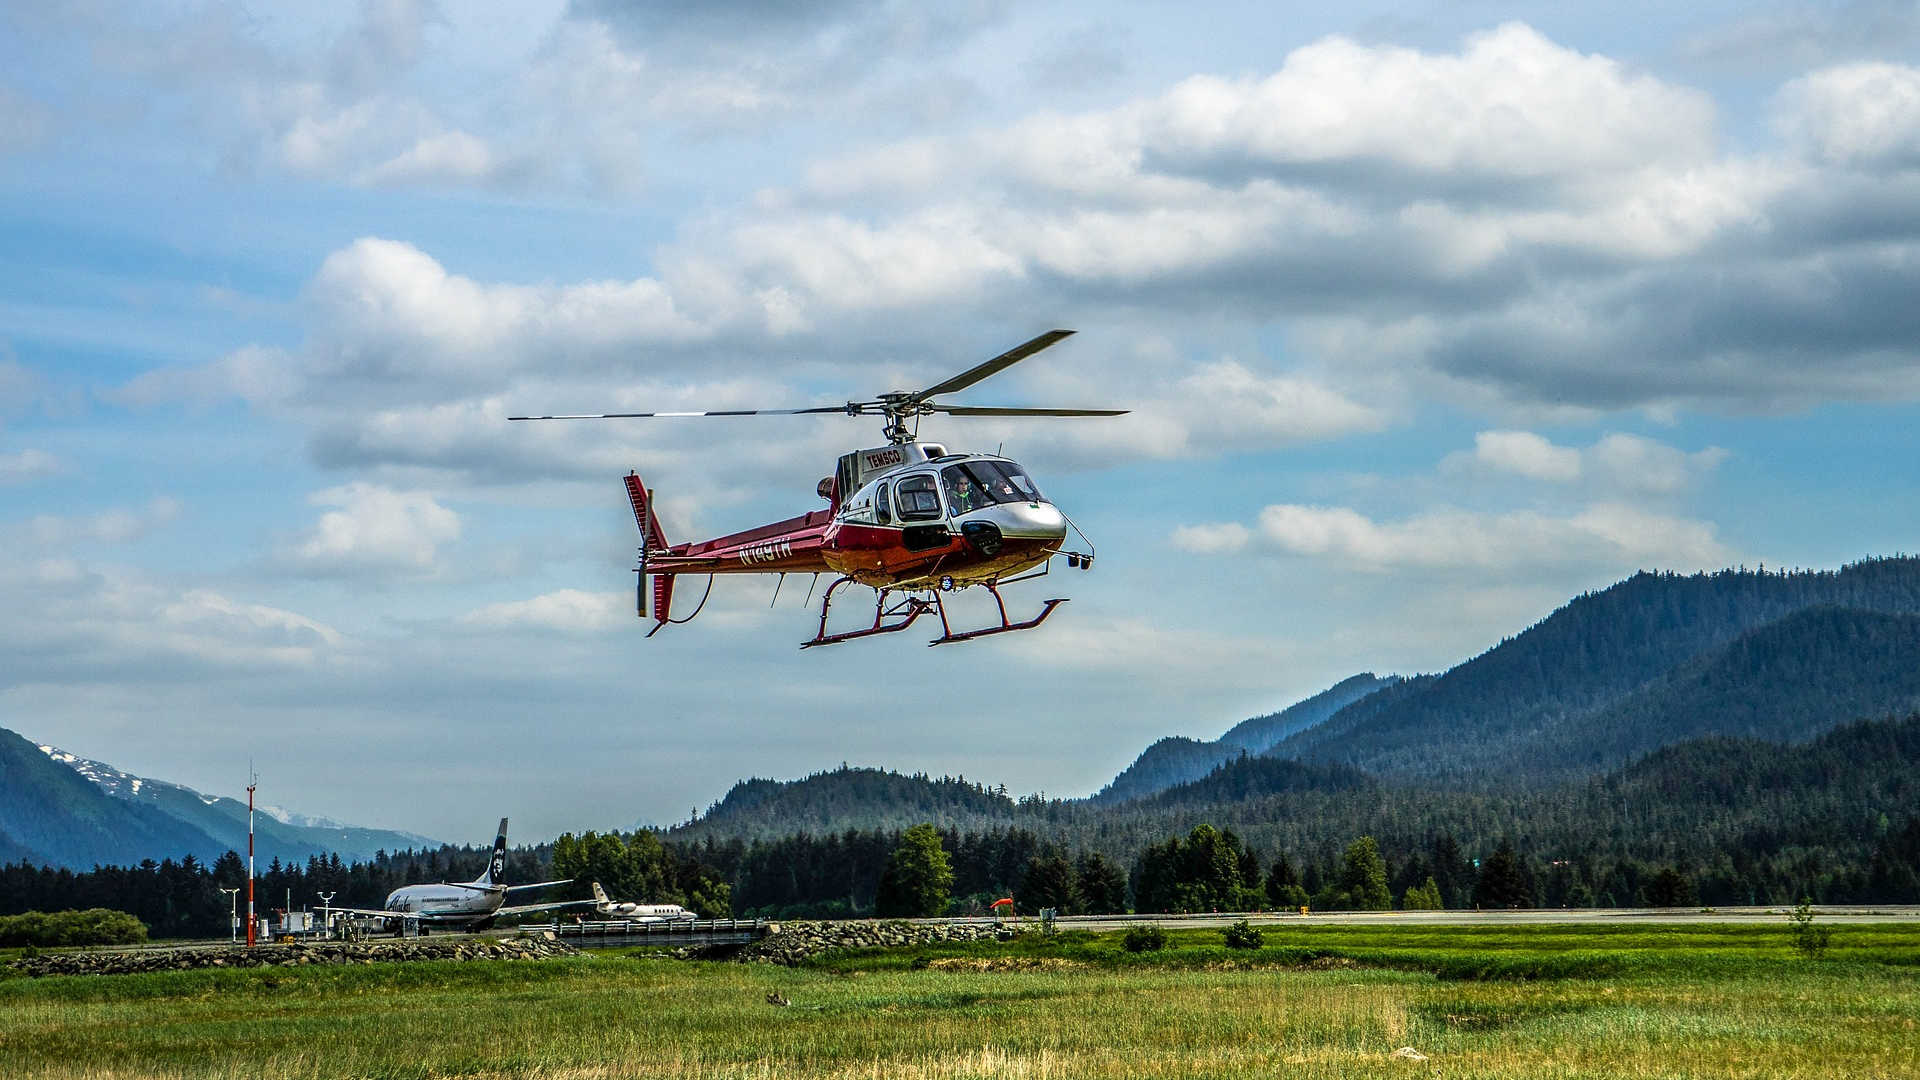 Ein kleiner Flugplatz zwischen den Bergen. Ein rot-silberfarbener Hubschrauber setzt zur Landung an.